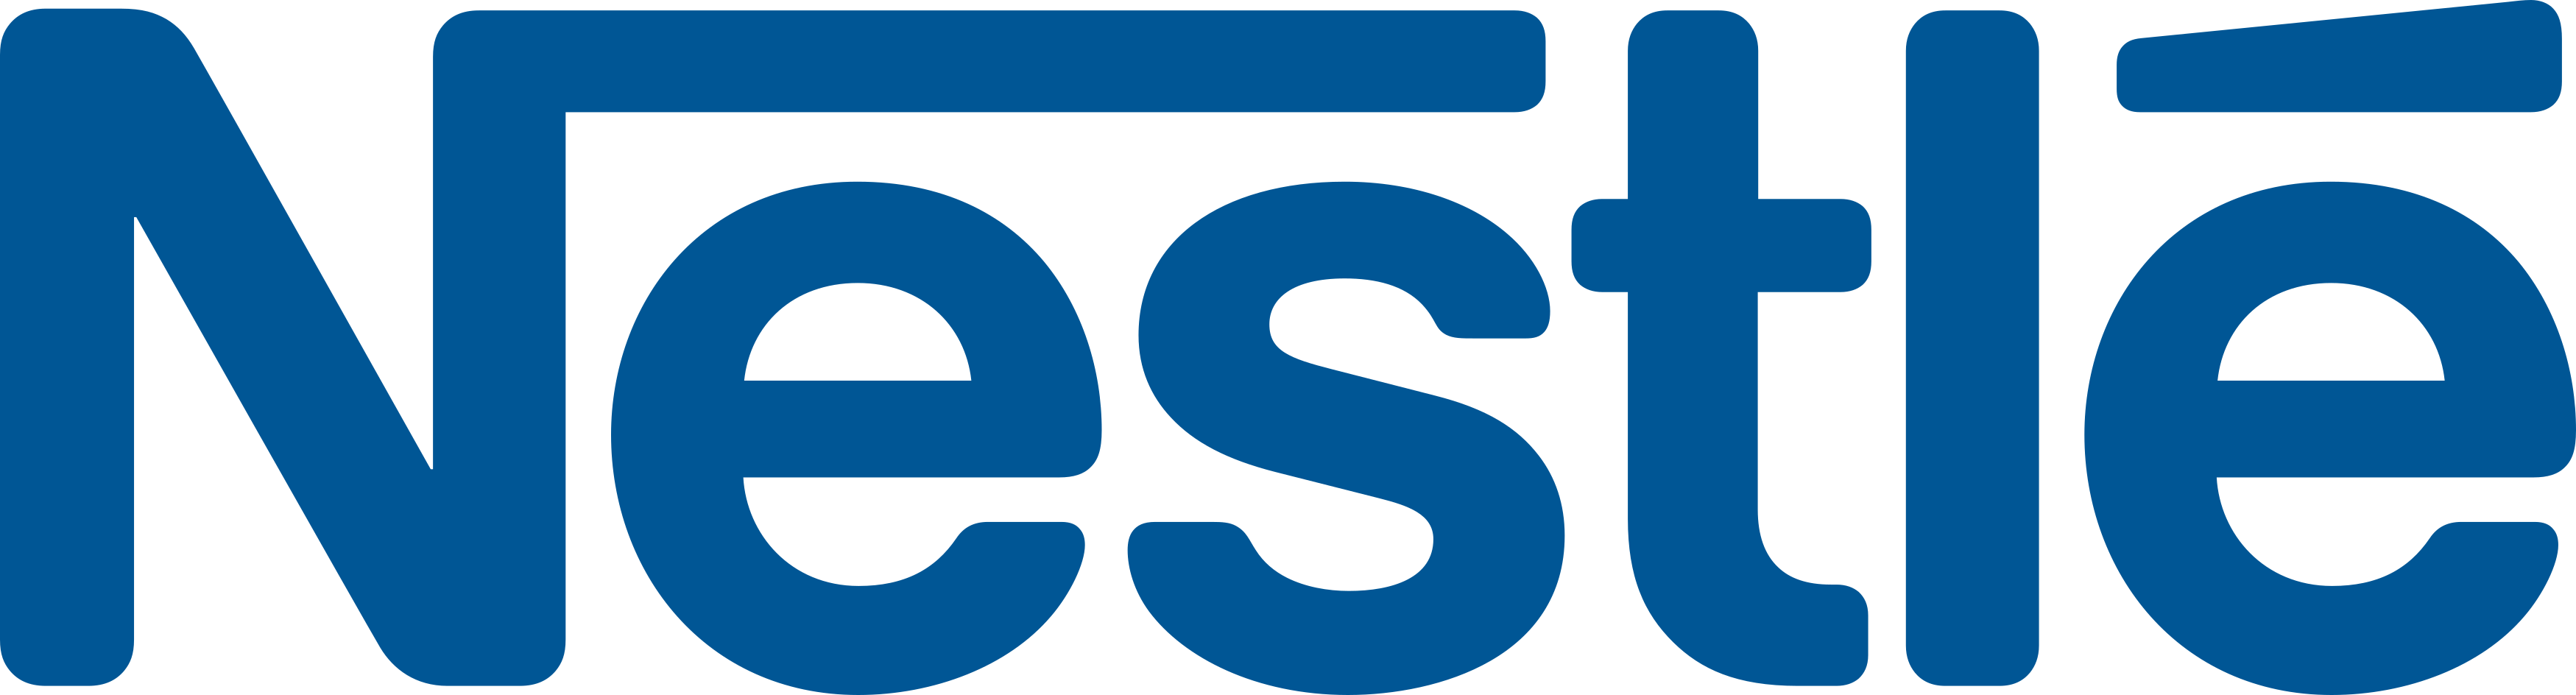 Nestle Logo PNG Image Background